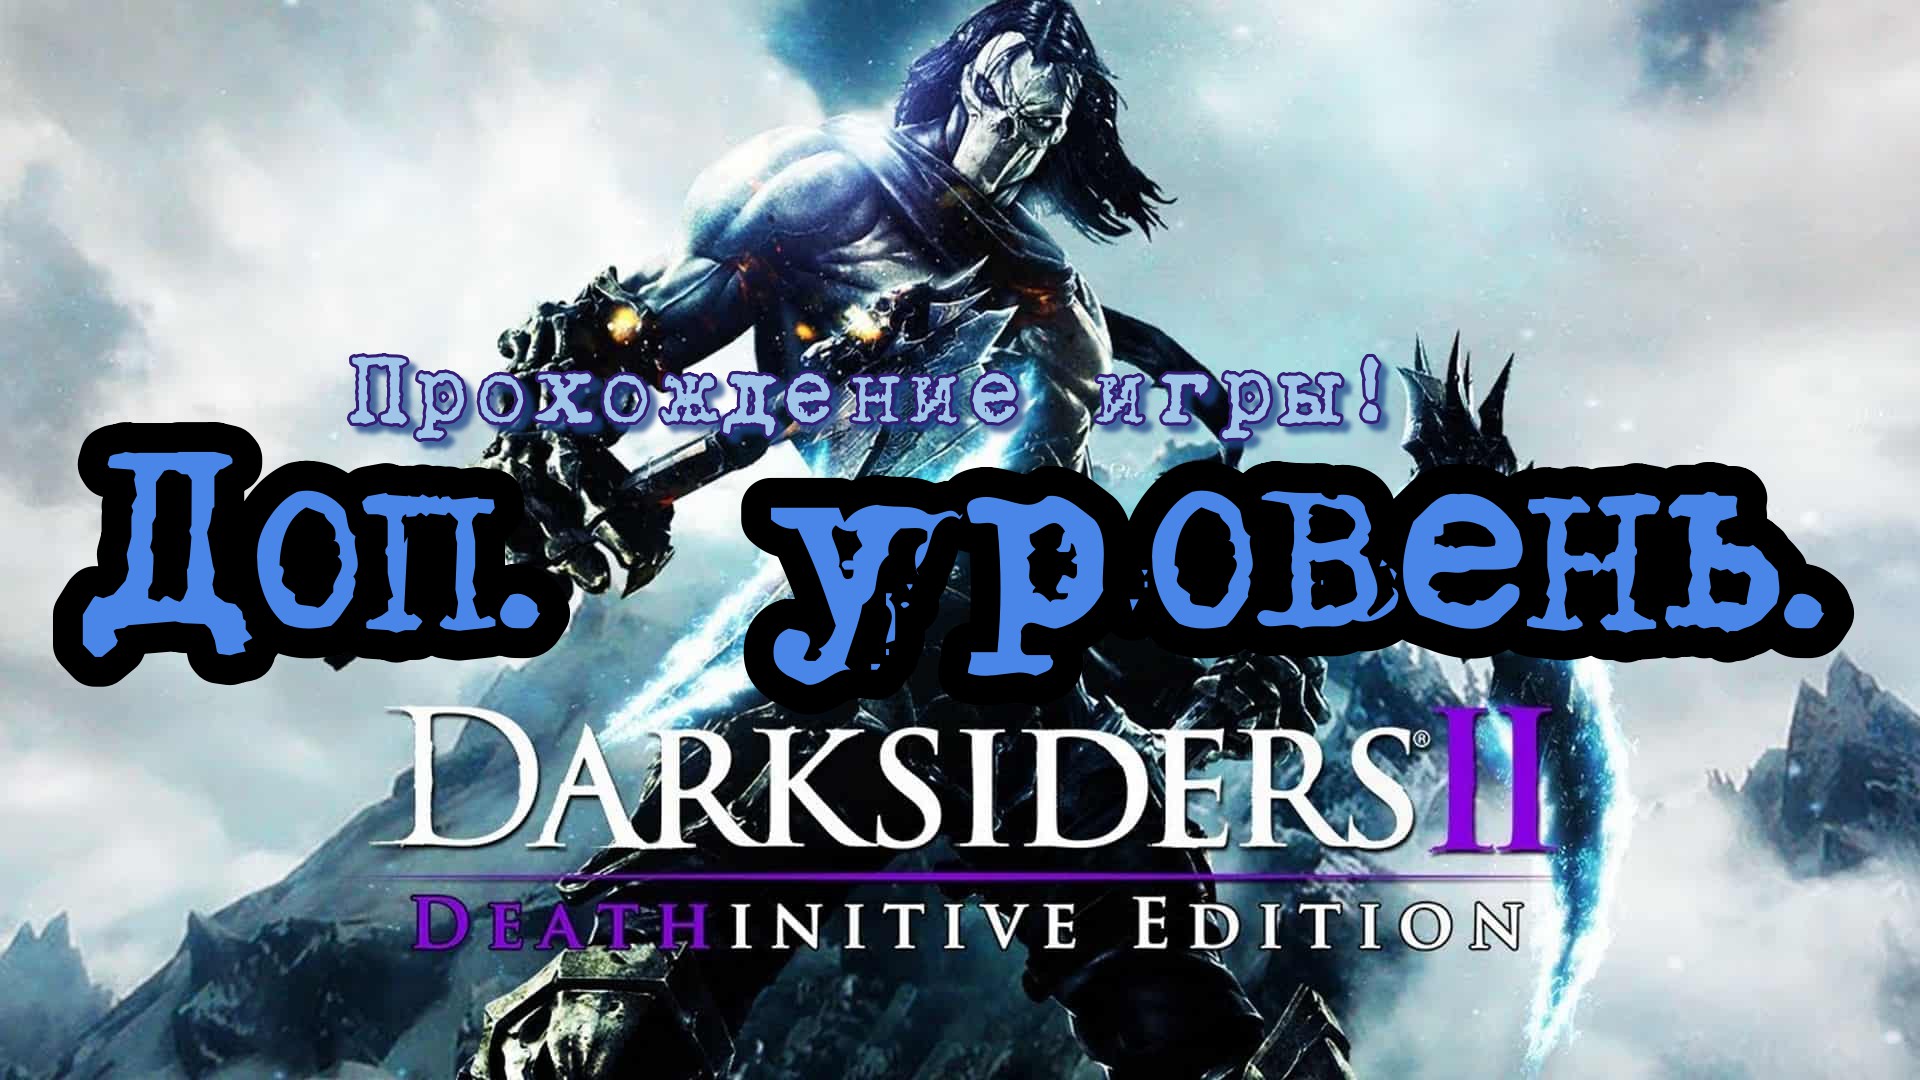 Прохождение игры - Darksiders 2 # 1. (Кузница в бездне) PC - HD - Full 1080p.